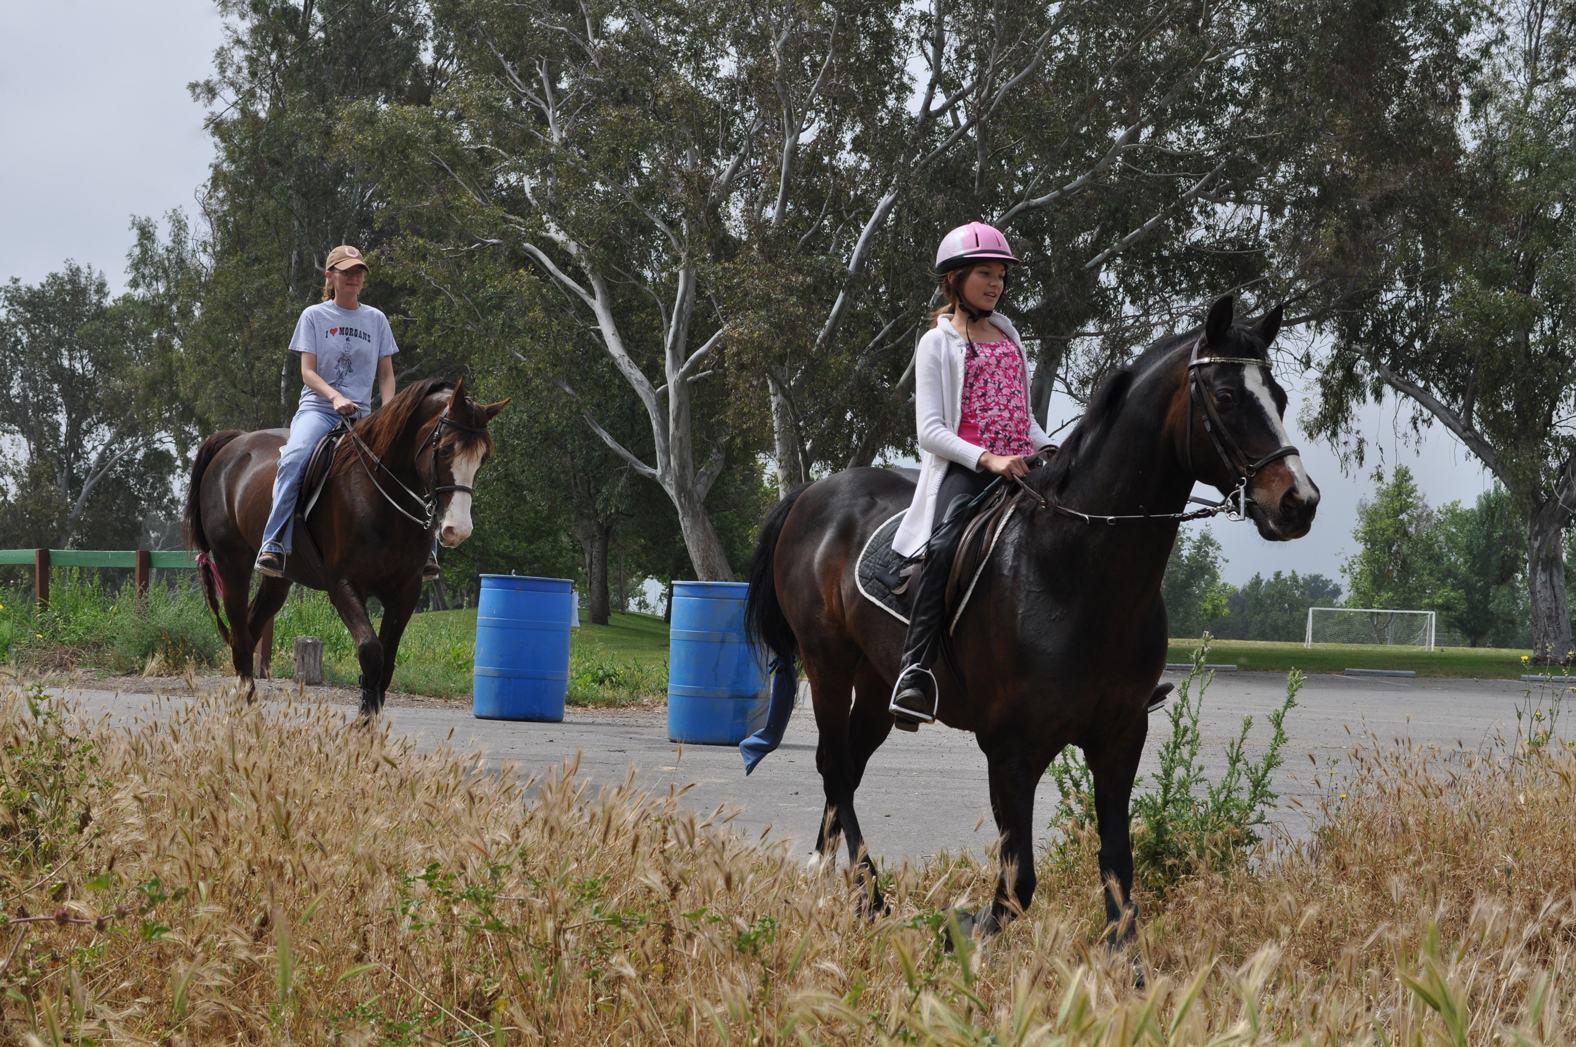 Horse riders at Prado